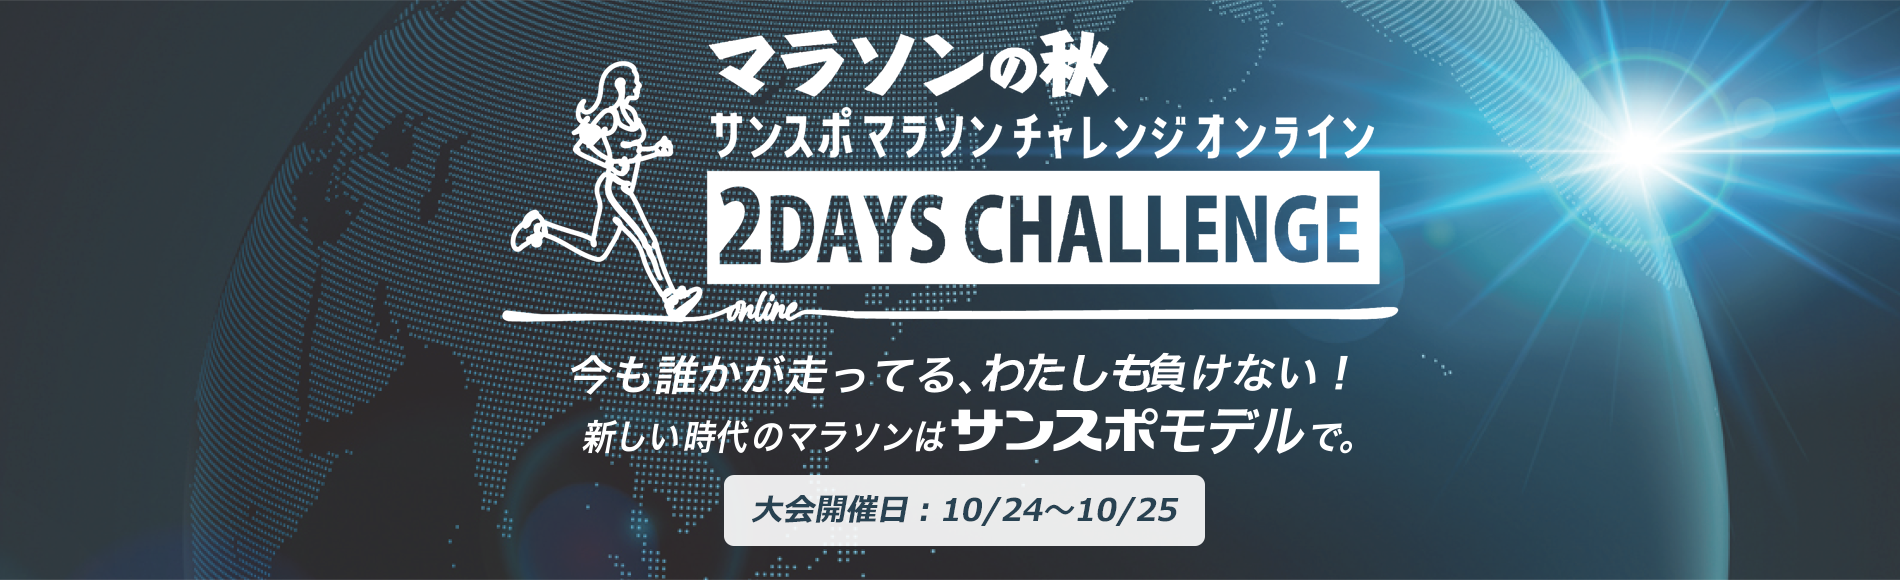 オンラインマラソンイベント第2弾「2Days Challenge「マラソンの秋」」